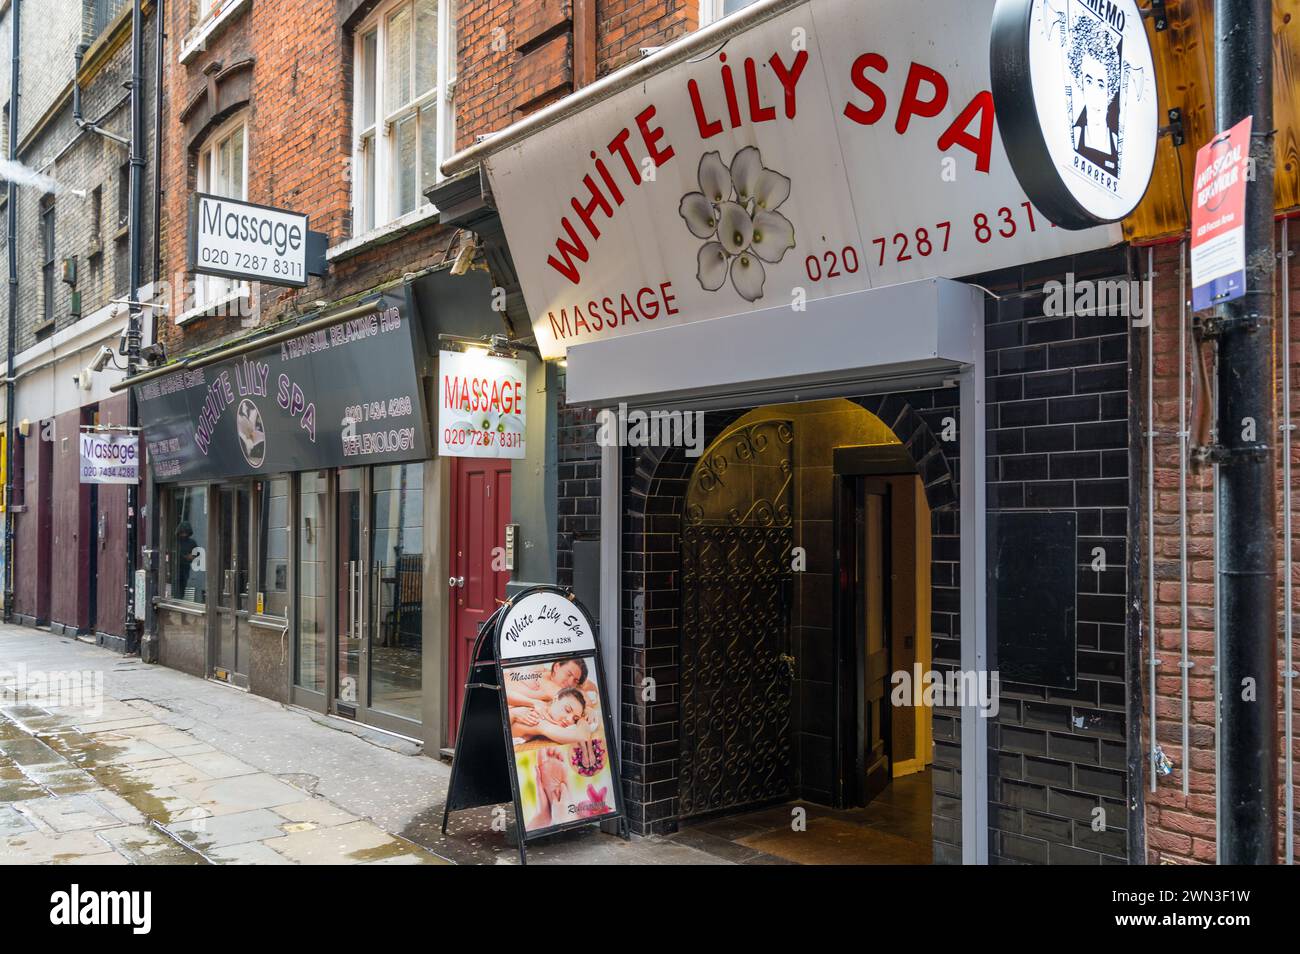 White Lily Spa Massage ein Massagetherapeut praktiziert am Tisbury Court Soho London England Großbritannien Stockfoto